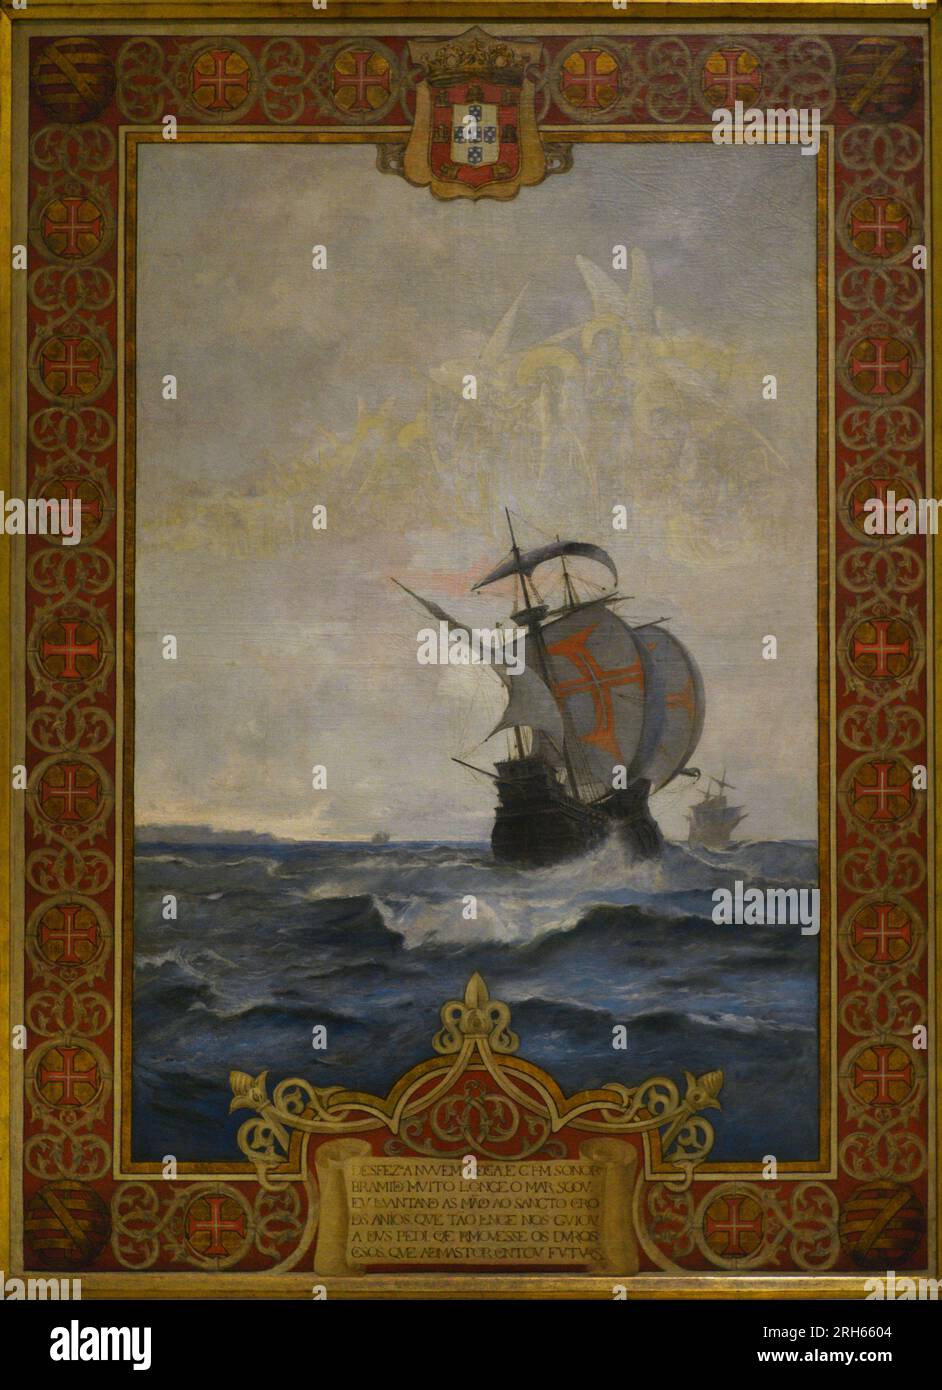 Carrack portoghese del 16th ° secolo. Olio su tela di Joao Vaz (1859-1931). Museo Marittimo. Lisbona, Portogallo. Foto Stock